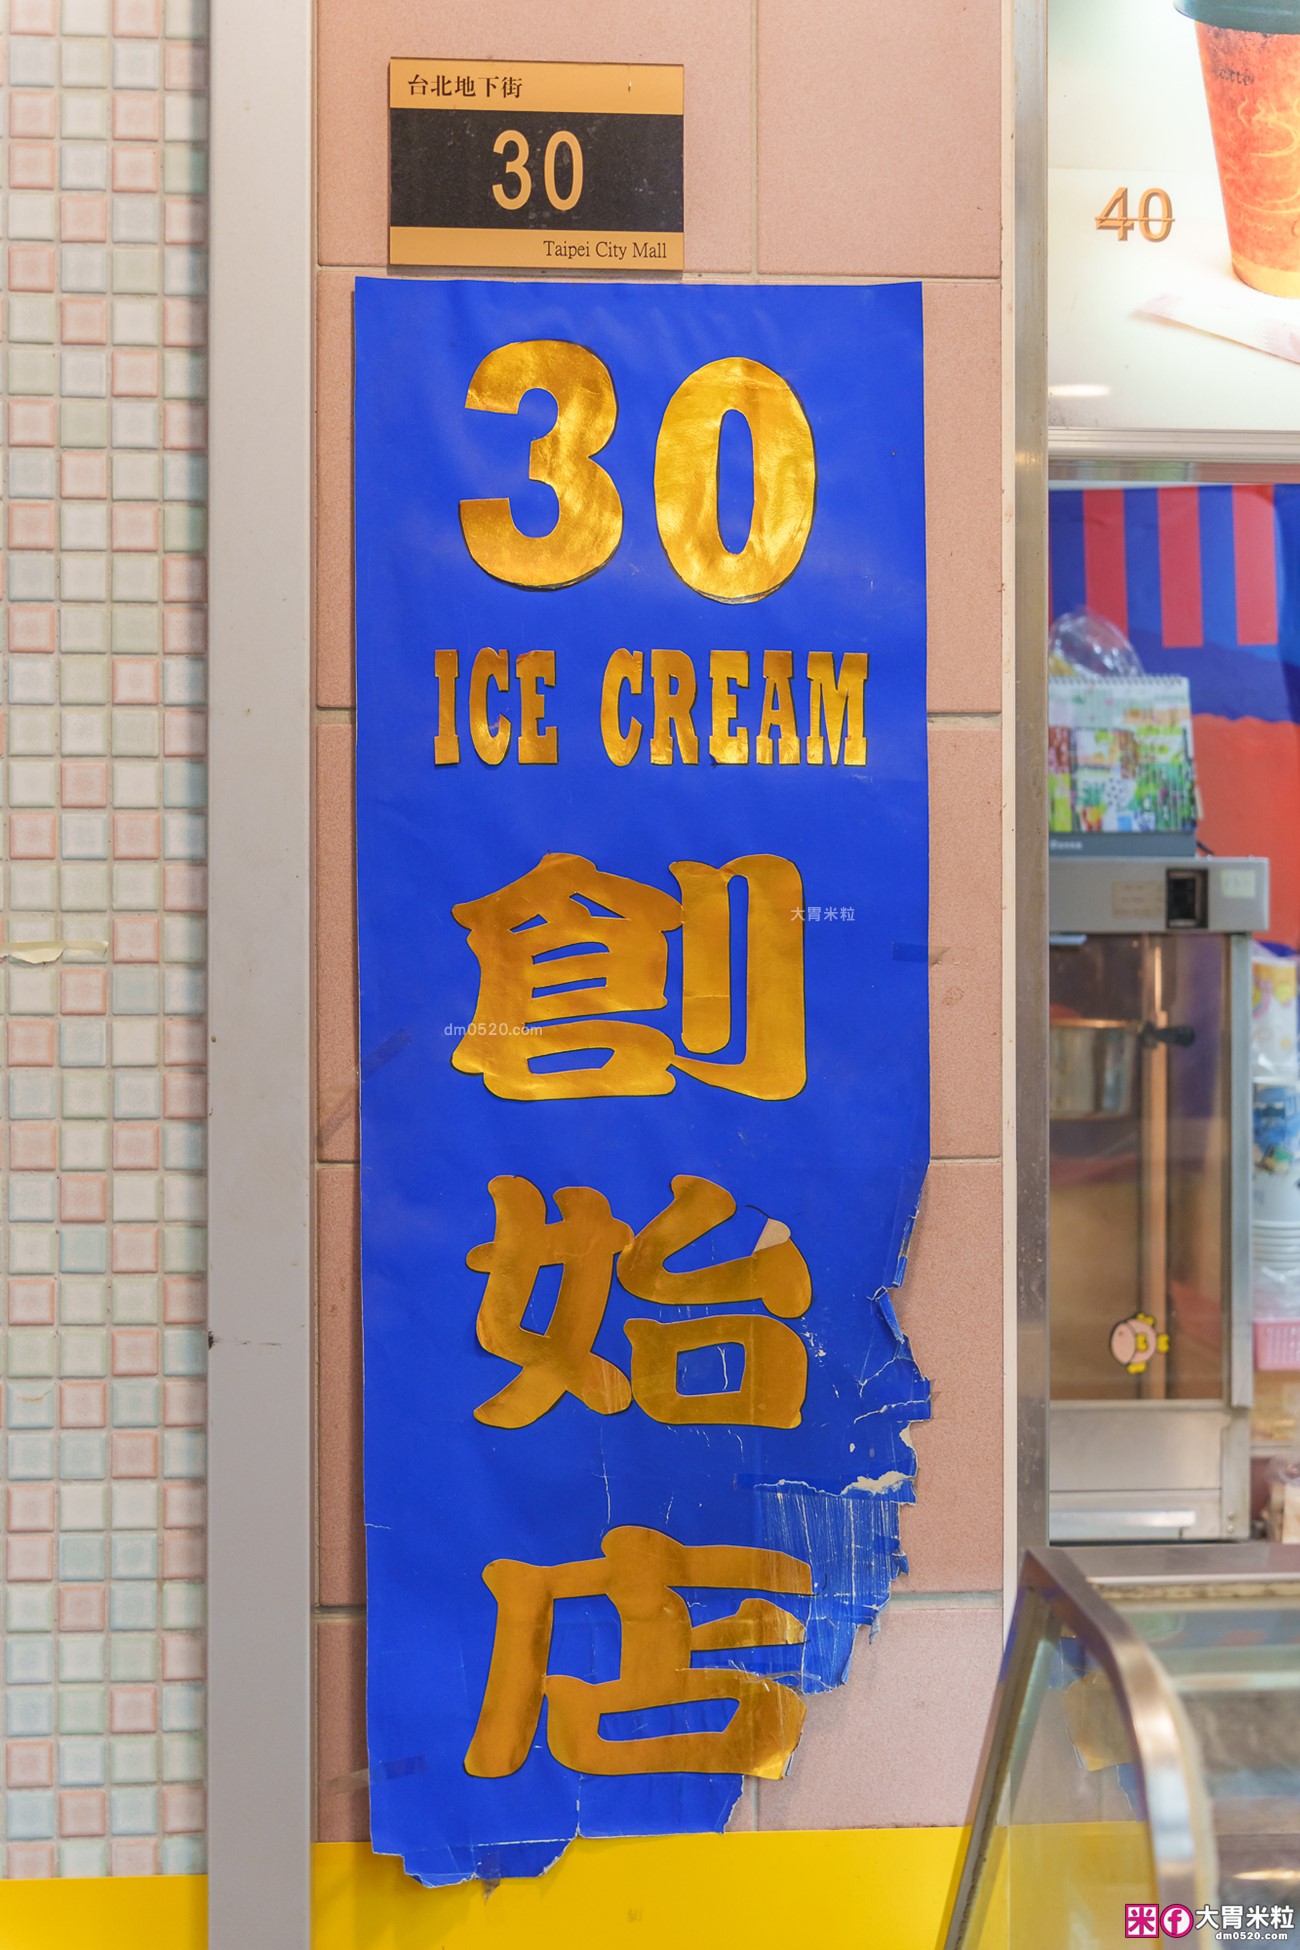 台北車站美食│30 ice cream 創始店 (3546冰淇淋)。44種冰淇淋選擇「兩球只要35元」推薦必吃超濃榴槤冰淇淋！台北地下街美食,